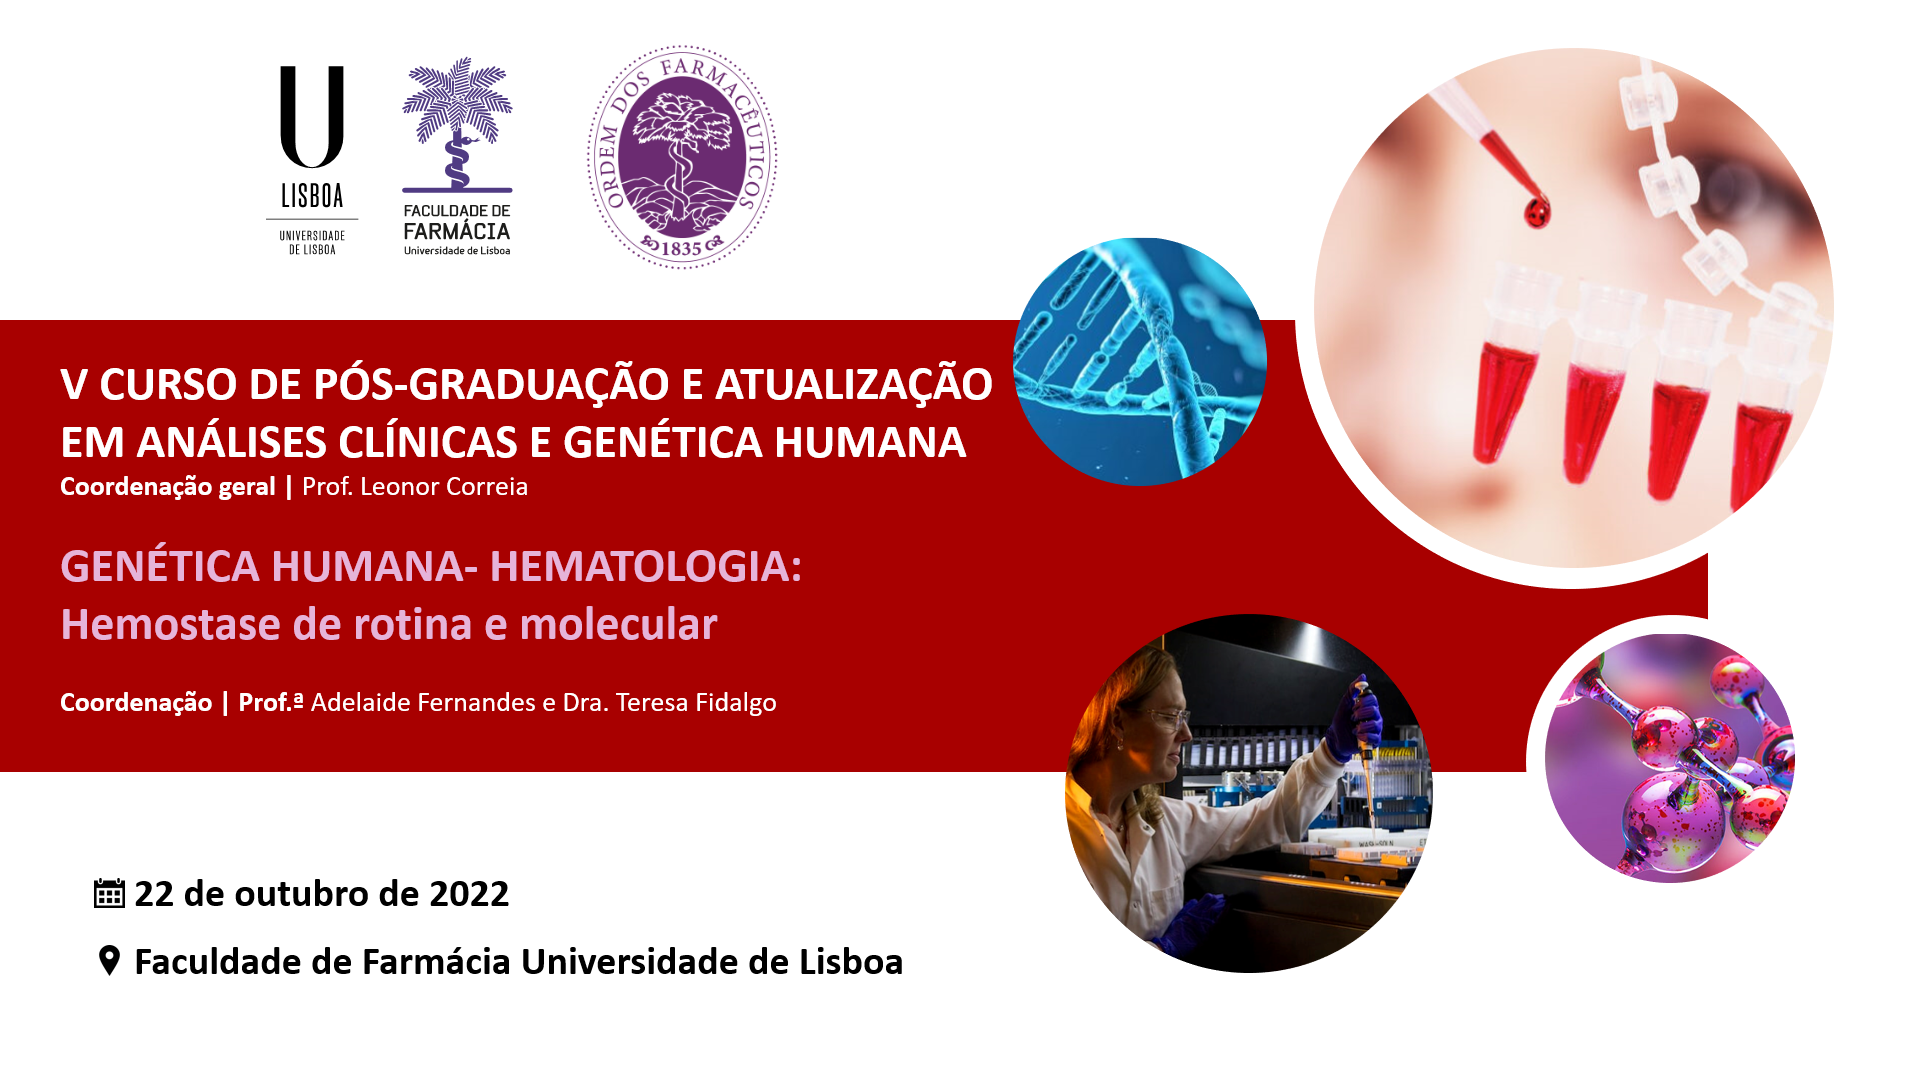 V Curso de Pós-Graduação em Análises Clínicas: Hematologia e Imunologia – Hemostase de rotina e molecular